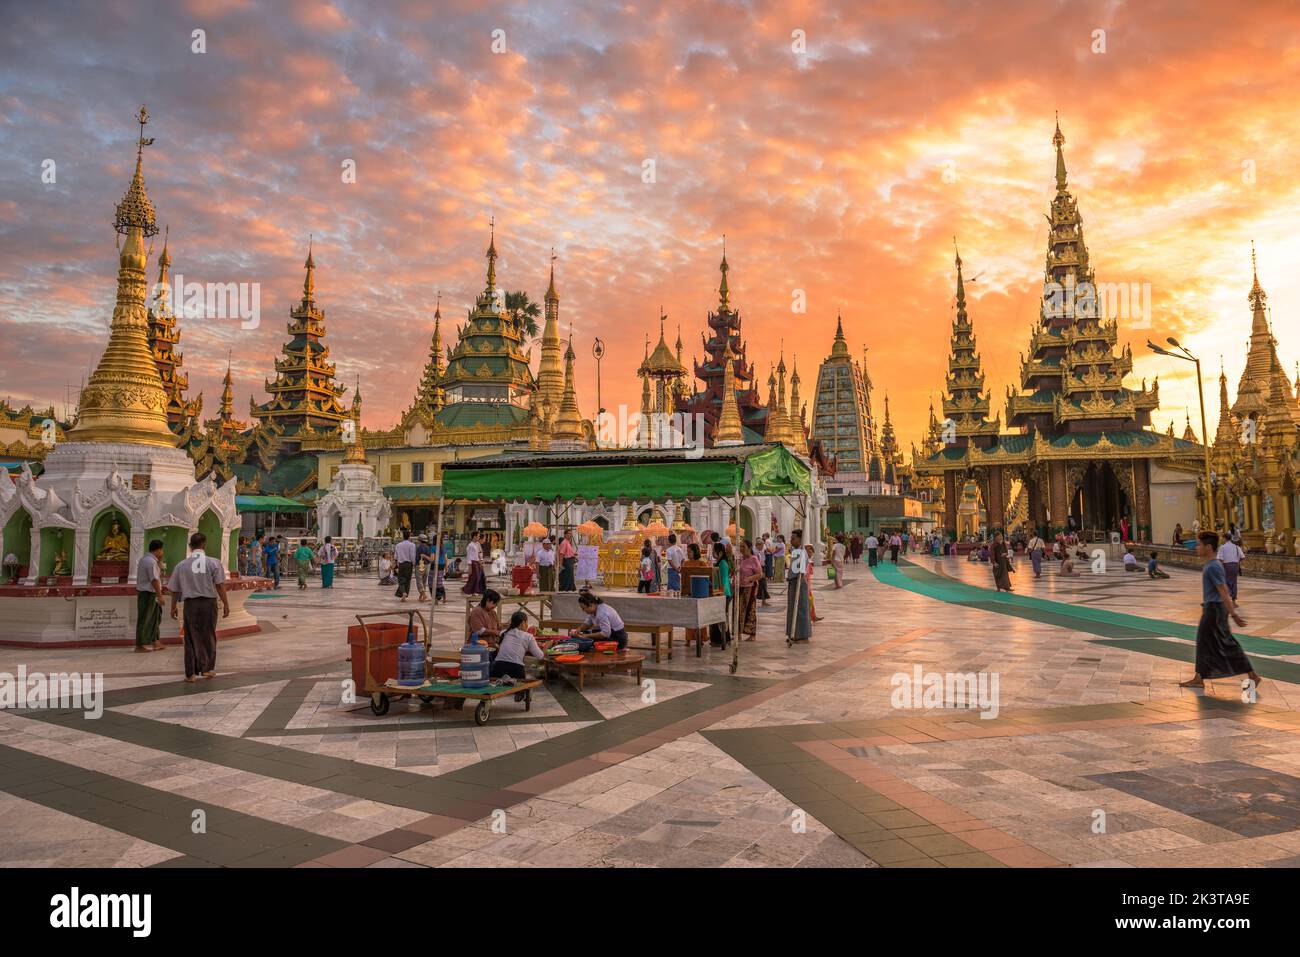 YANGON, MYANMAR - 17 DE OCTUBRE de 2015: Los adoradores de la mañana temprana visitan la pagoda Shwedagon. La pagoda Shwedagon es la pagoda budista más sagrada de Myanmar. Foto de stock